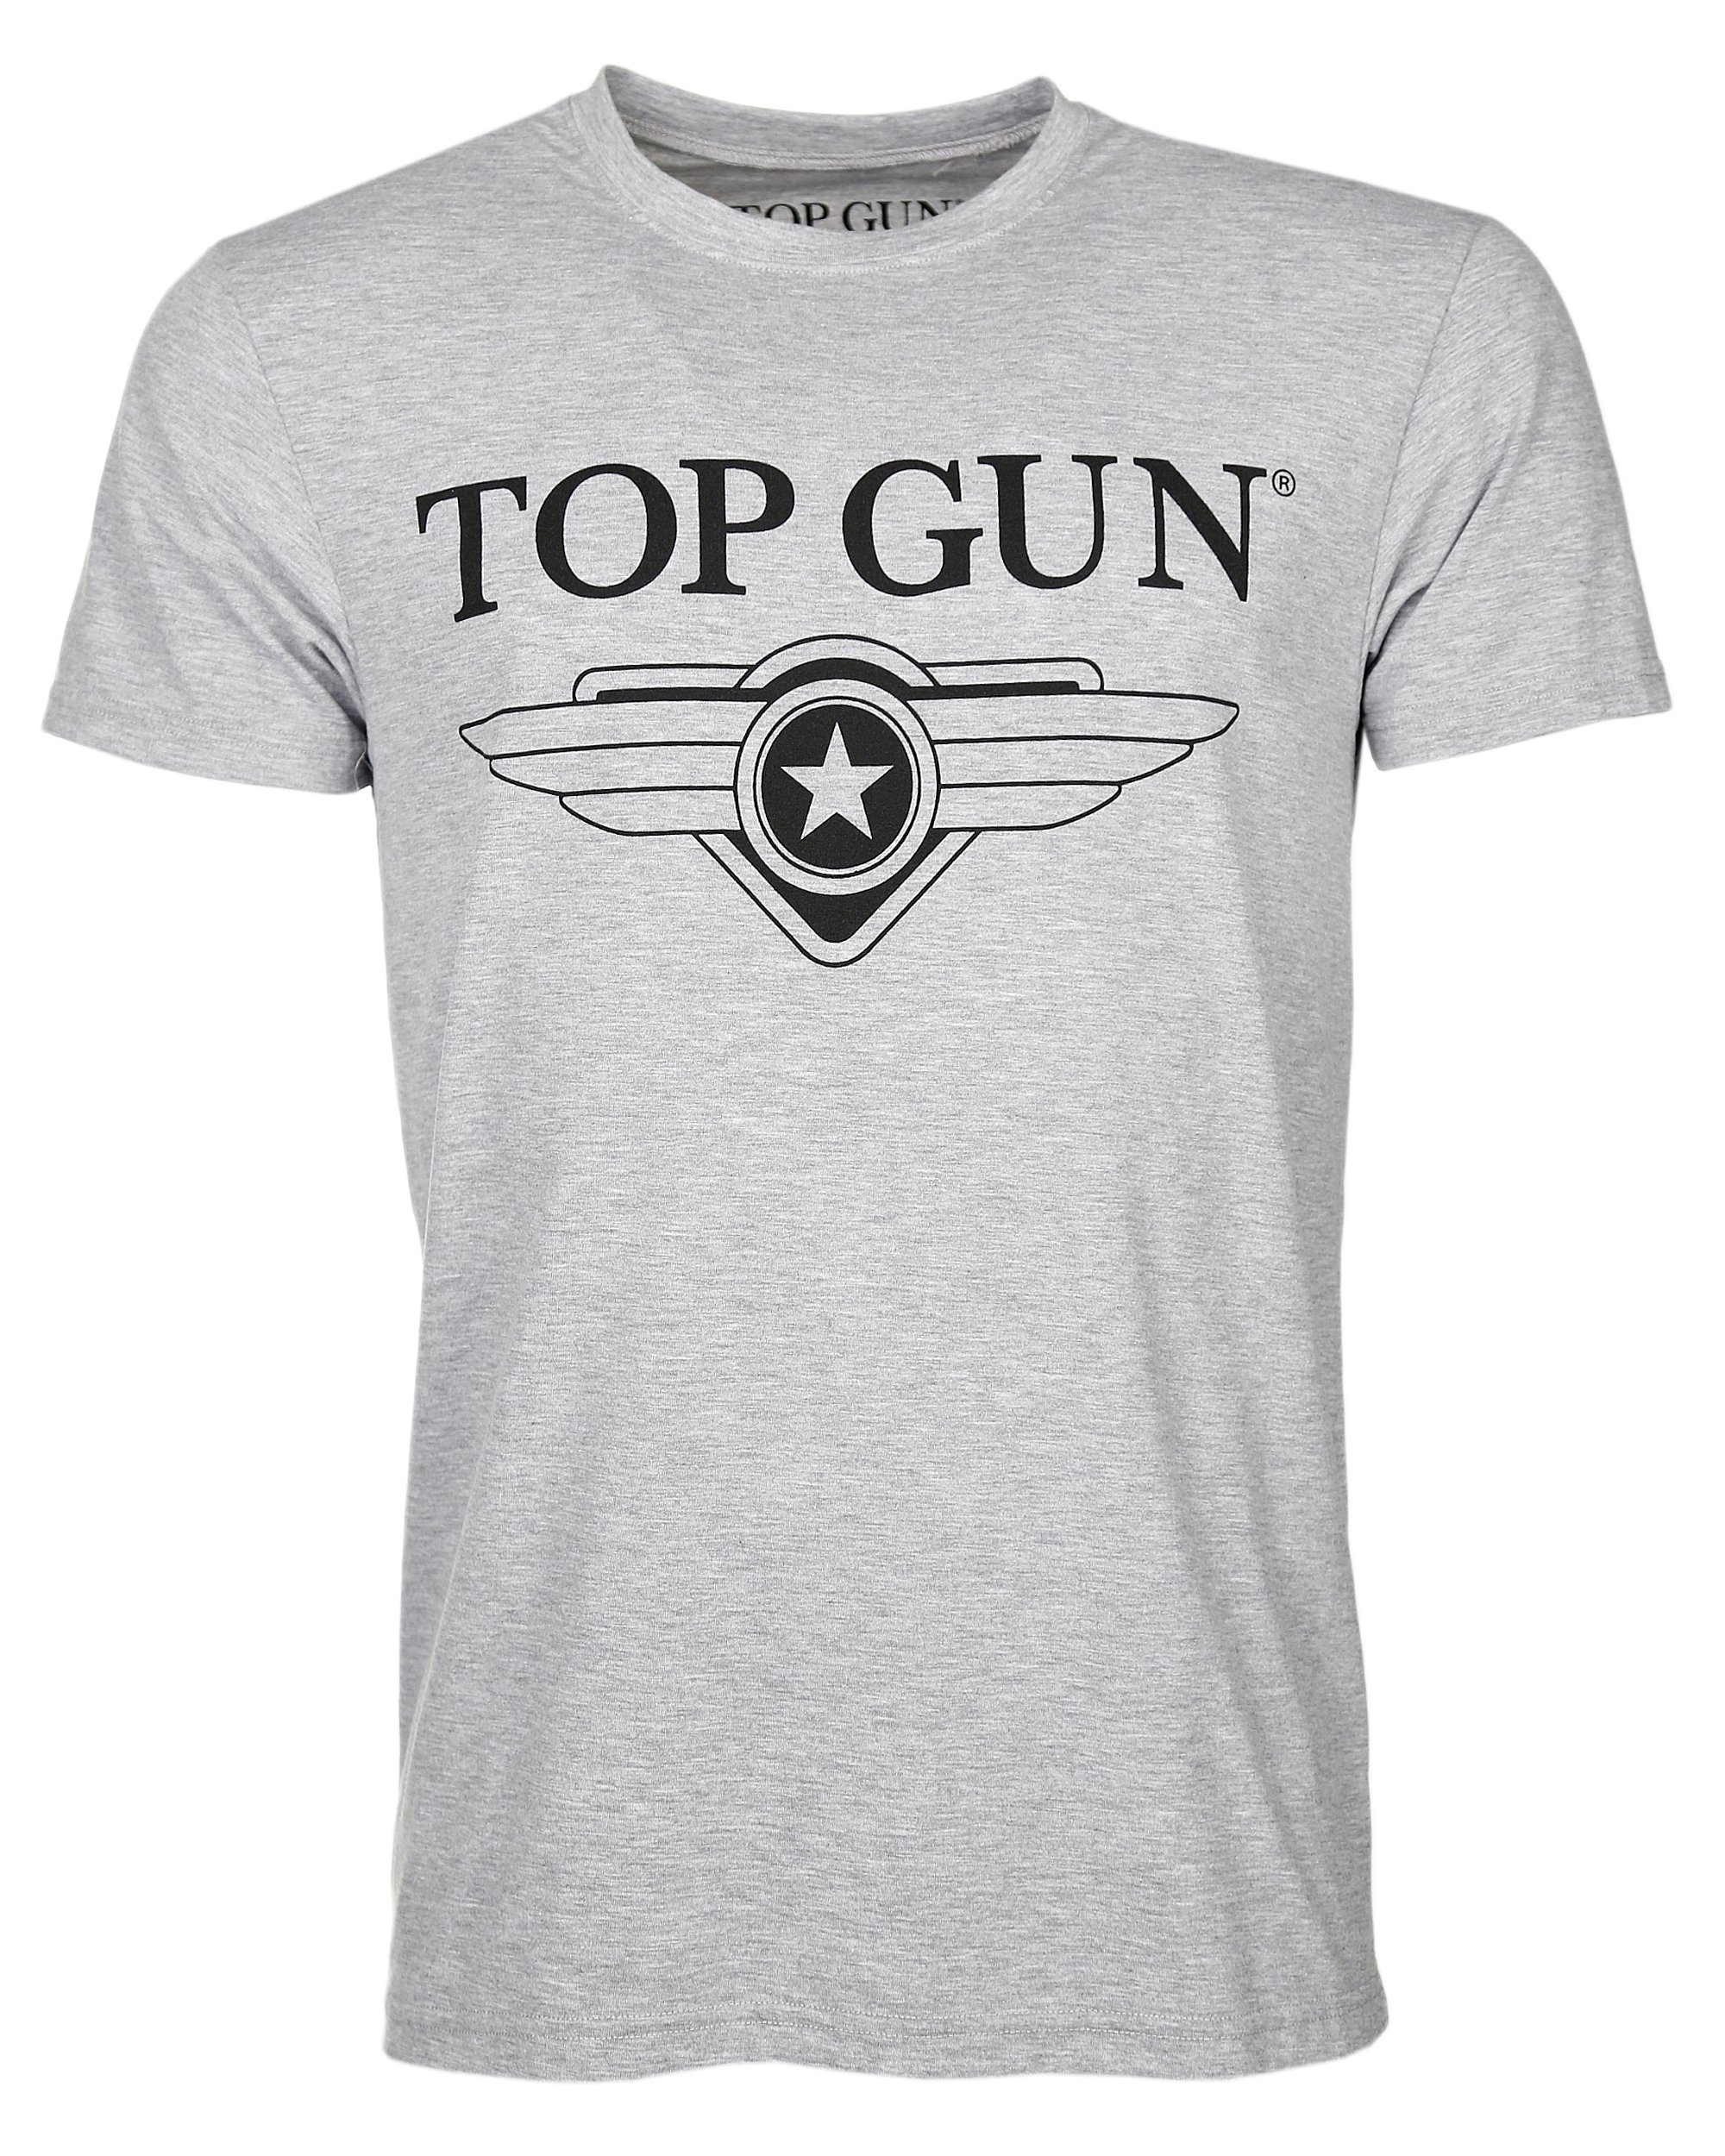 TOP GUN T-Shirt Cloudy TG20191006 grey